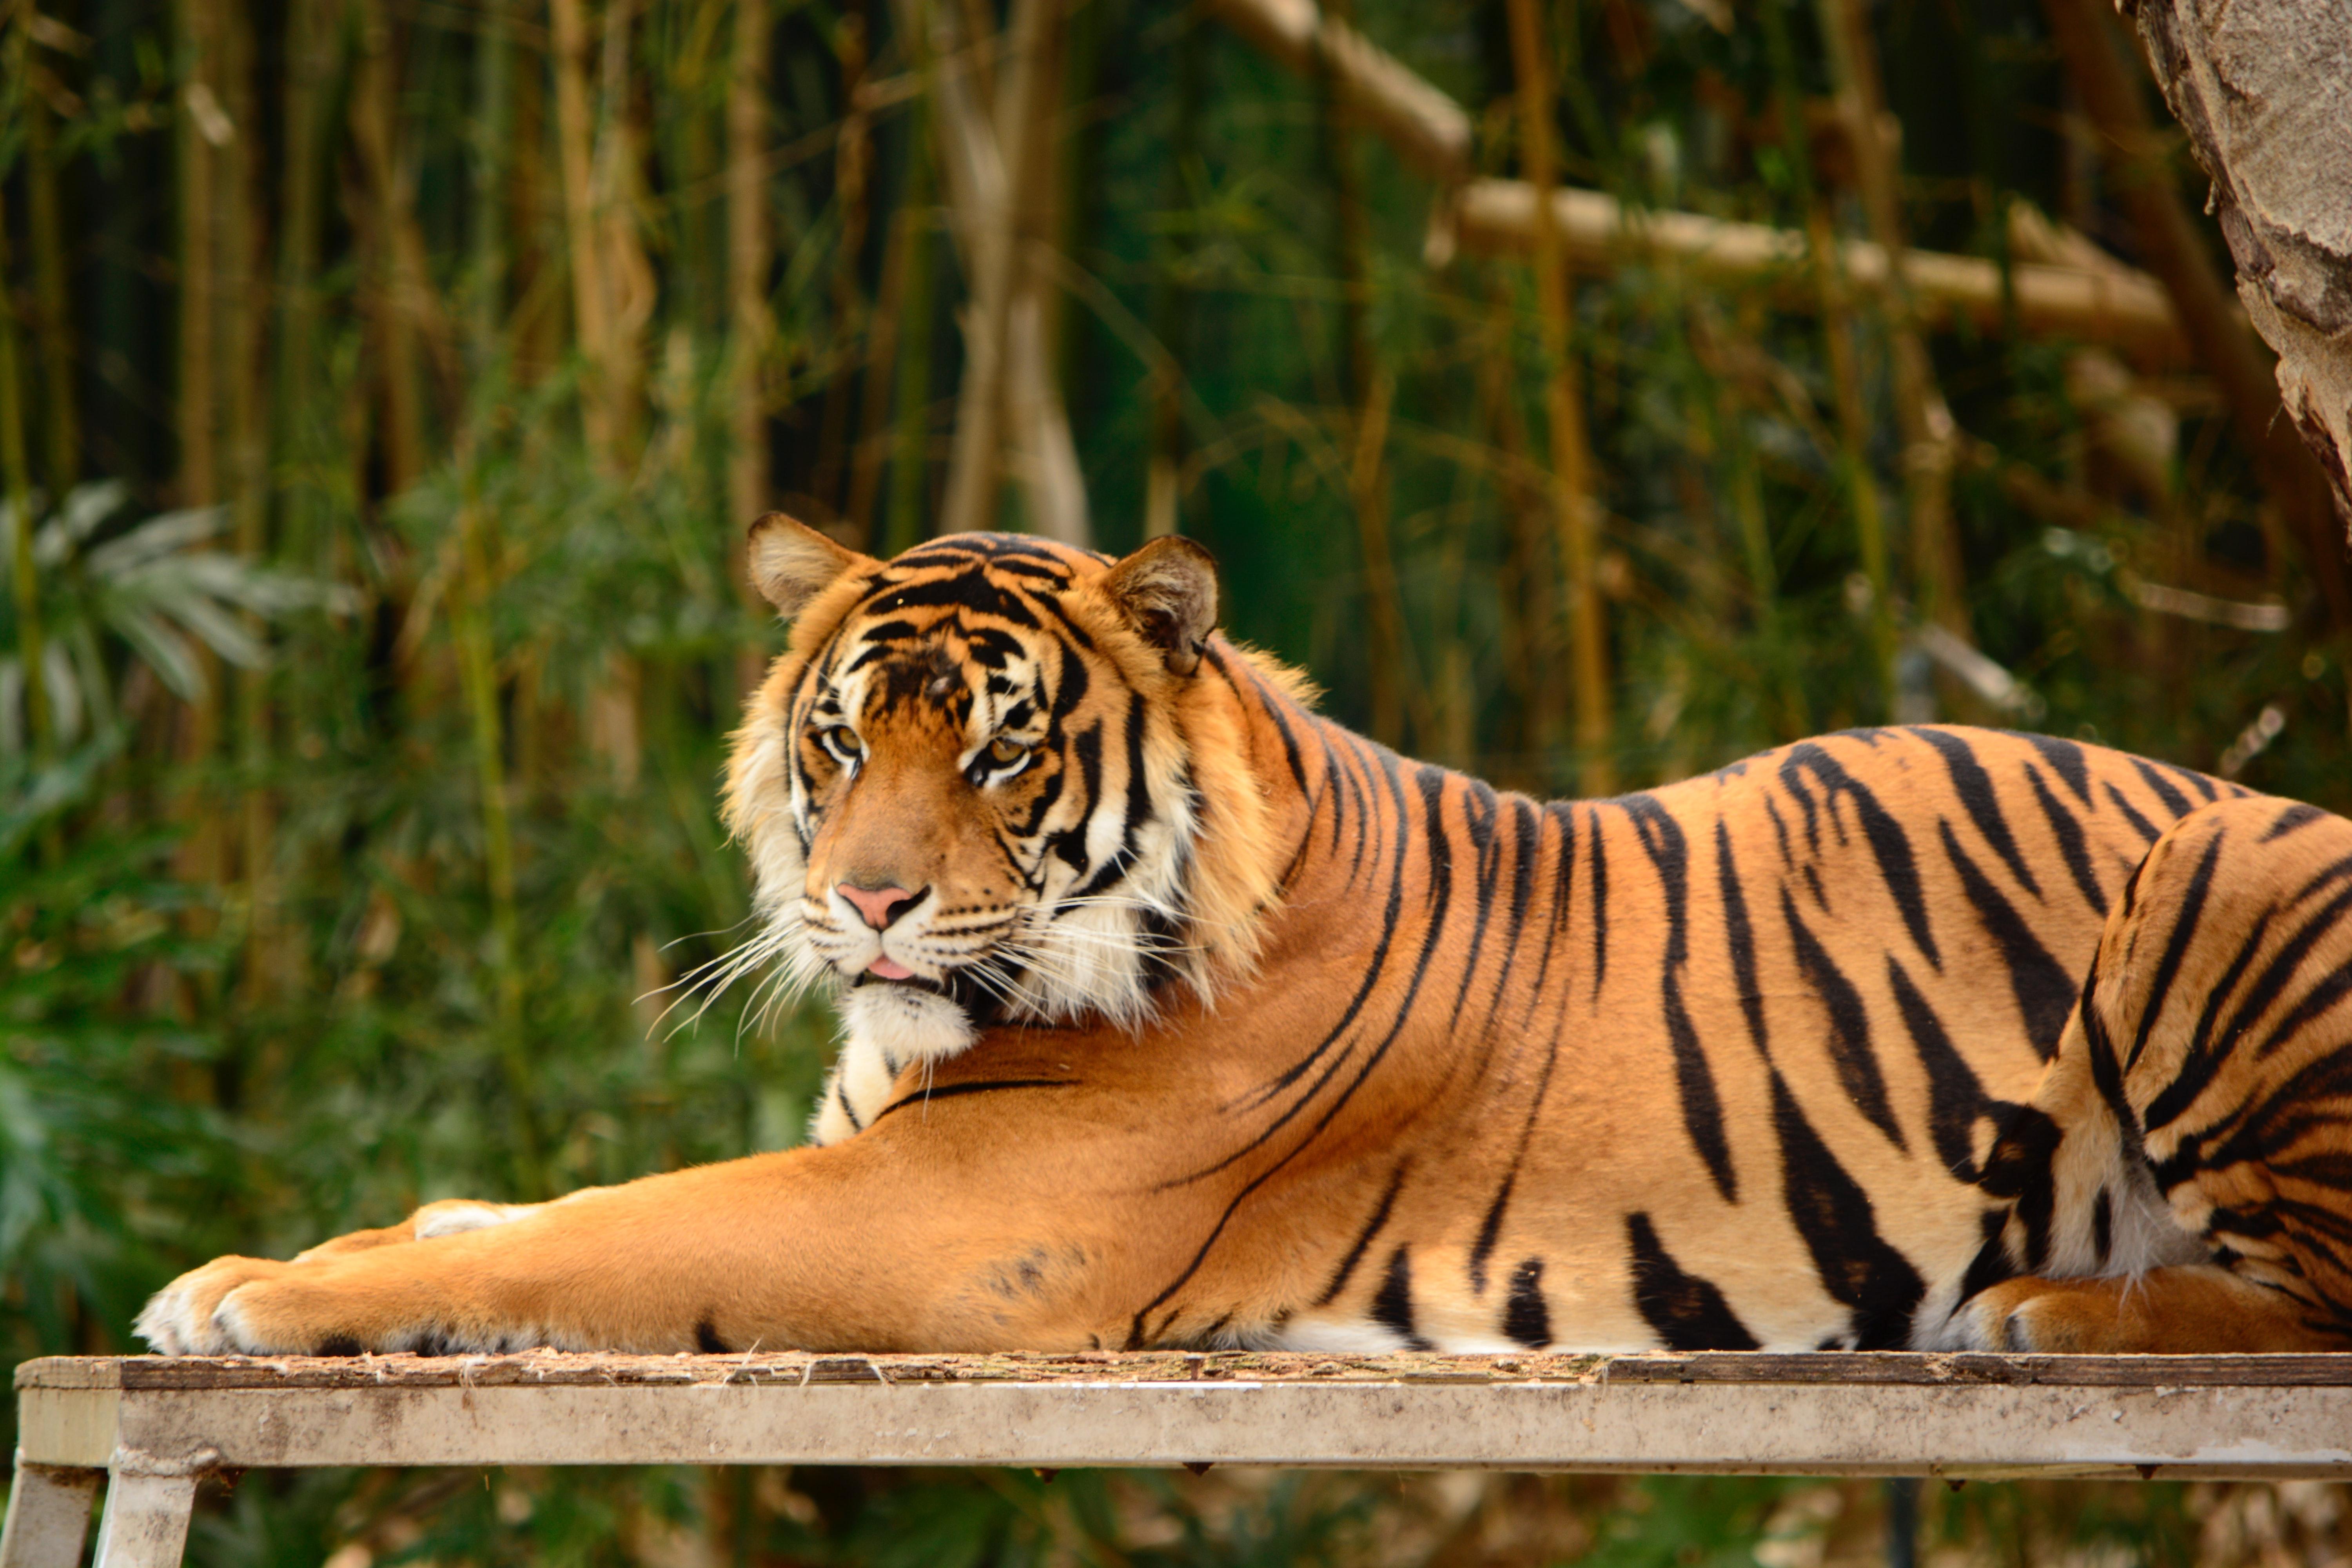 Imagen tigre en zoológico. Fuente: Unsplash.